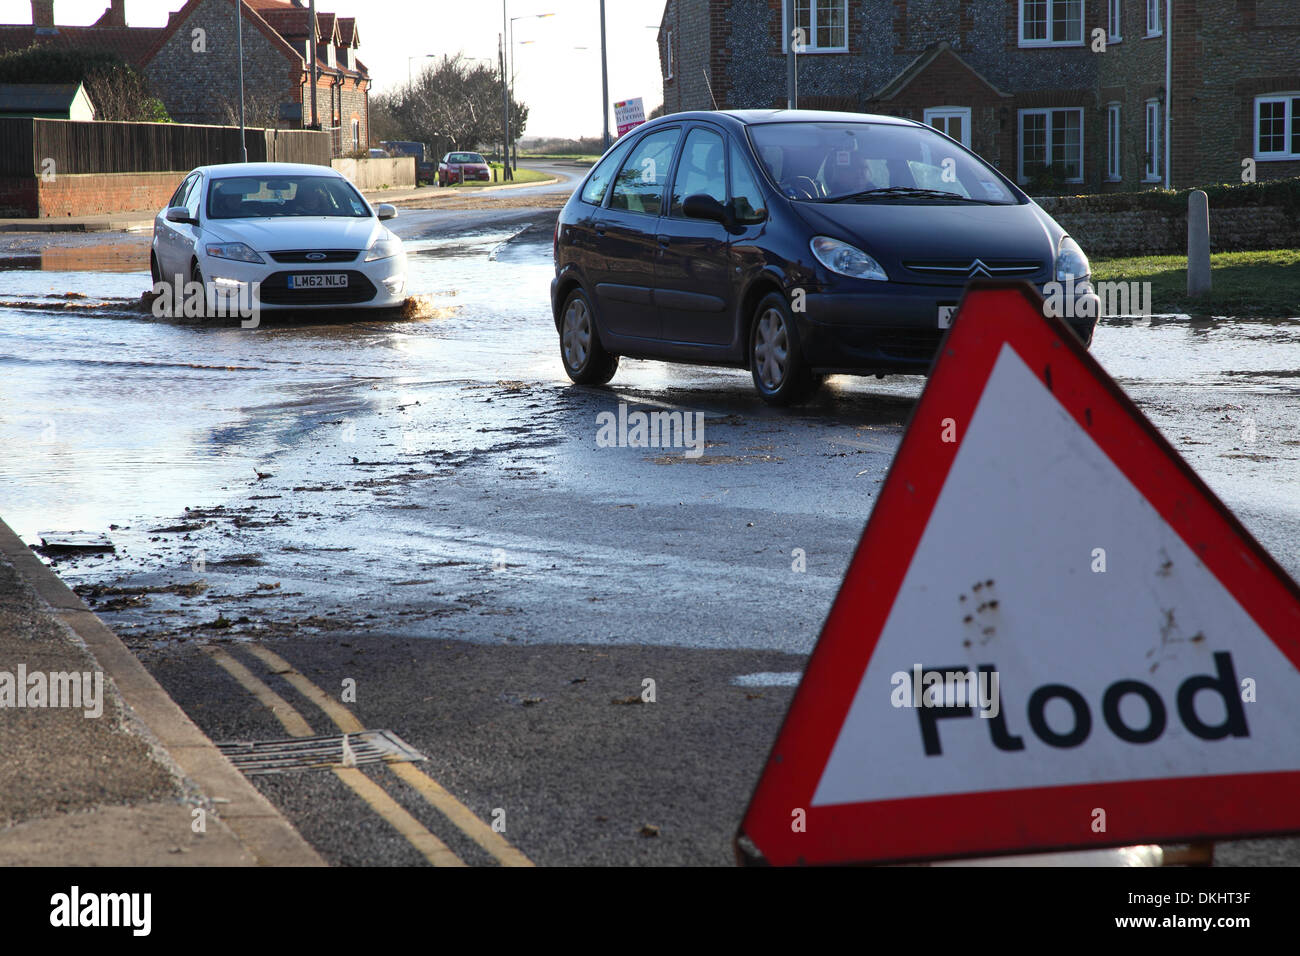 Piogge intense e tempeste hanno colpito il Regno Unito, le auto sono viste qui mentre attraversano l'acqua alluvionale e oltrepassano un cartello di segnalazione alluvione. Foto Stock